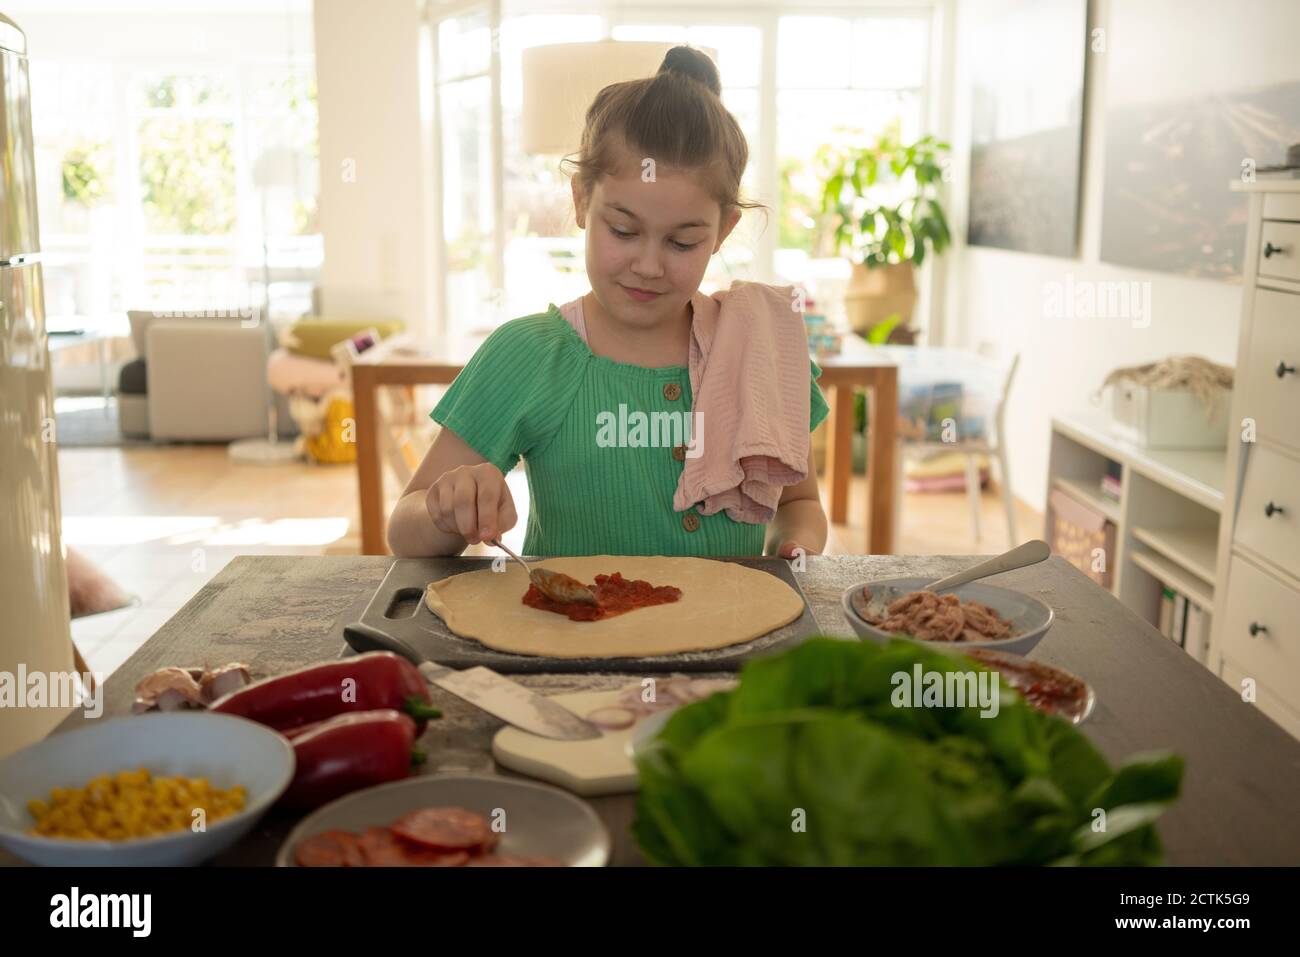 Jolie fille préparant une pizza sur une île de cuisine Banque D'Images